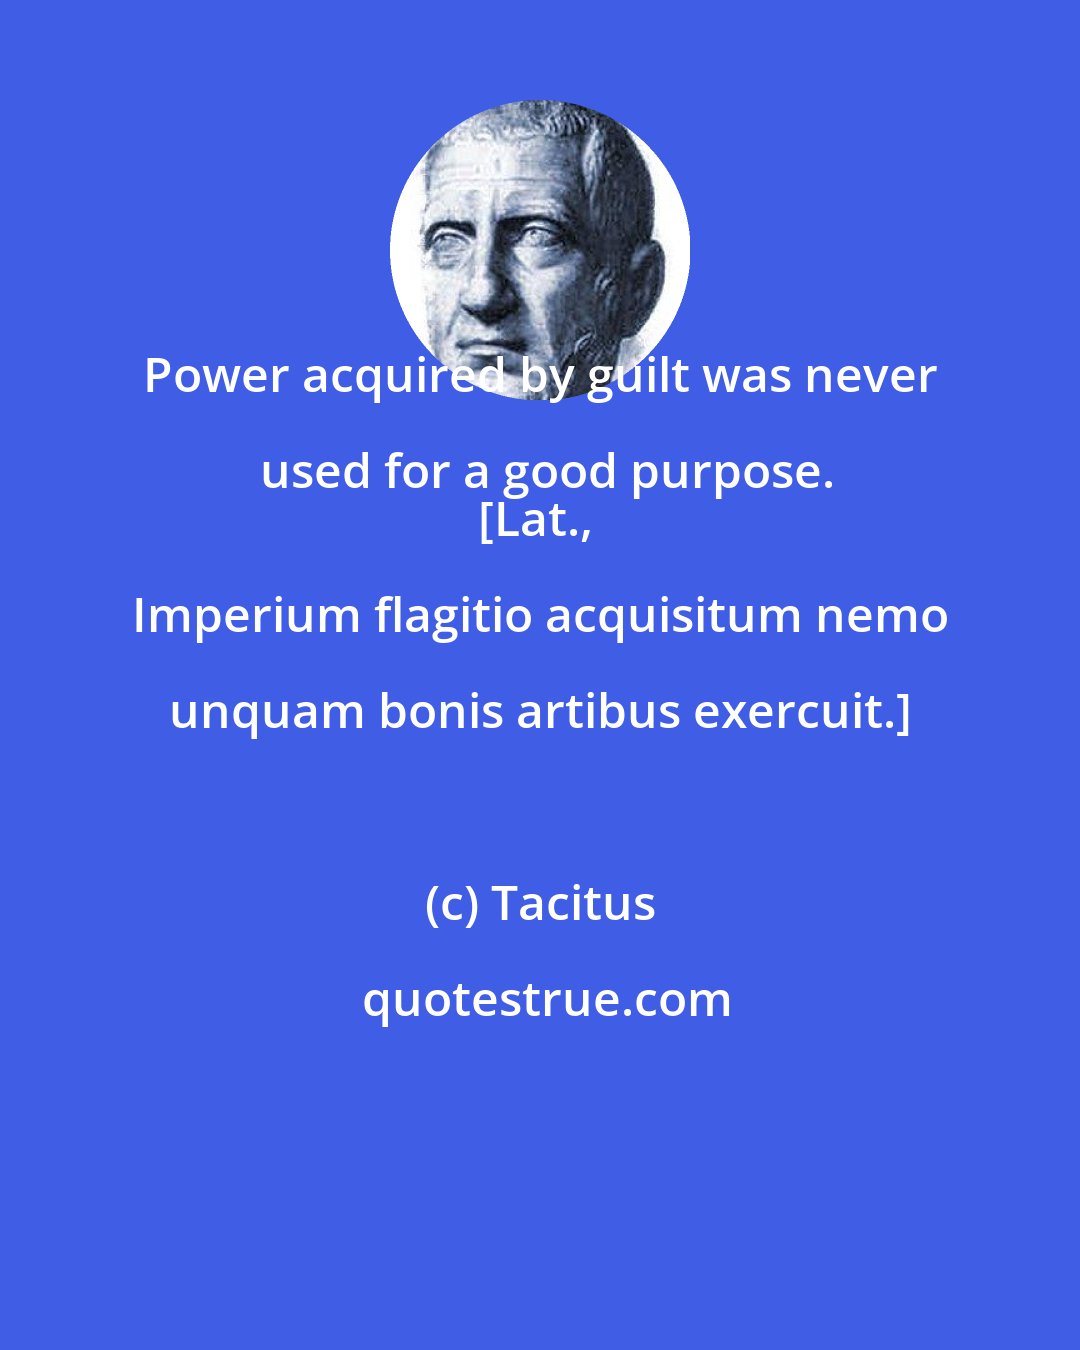 Tacitus: Power acquired by guilt was never used for a good purpose.
[Lat., Imperium flagitio acquisitum nemo unquam bonis artibus exercuit.]